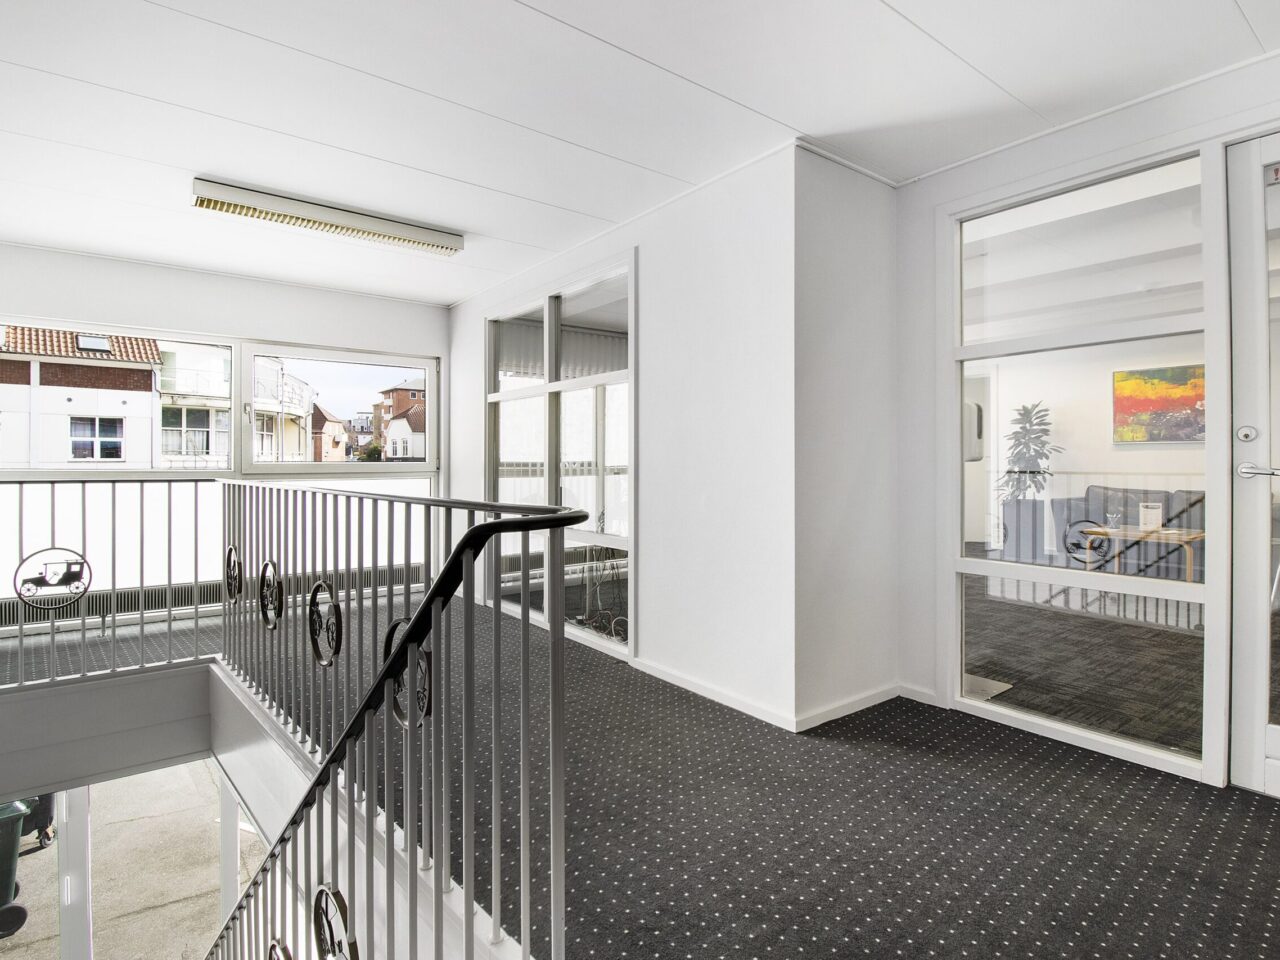 Lokaler til leje i Kolding Centrum - Indgang med trappe, hvide vægge og loft, grå gulvtæppe og vinduer